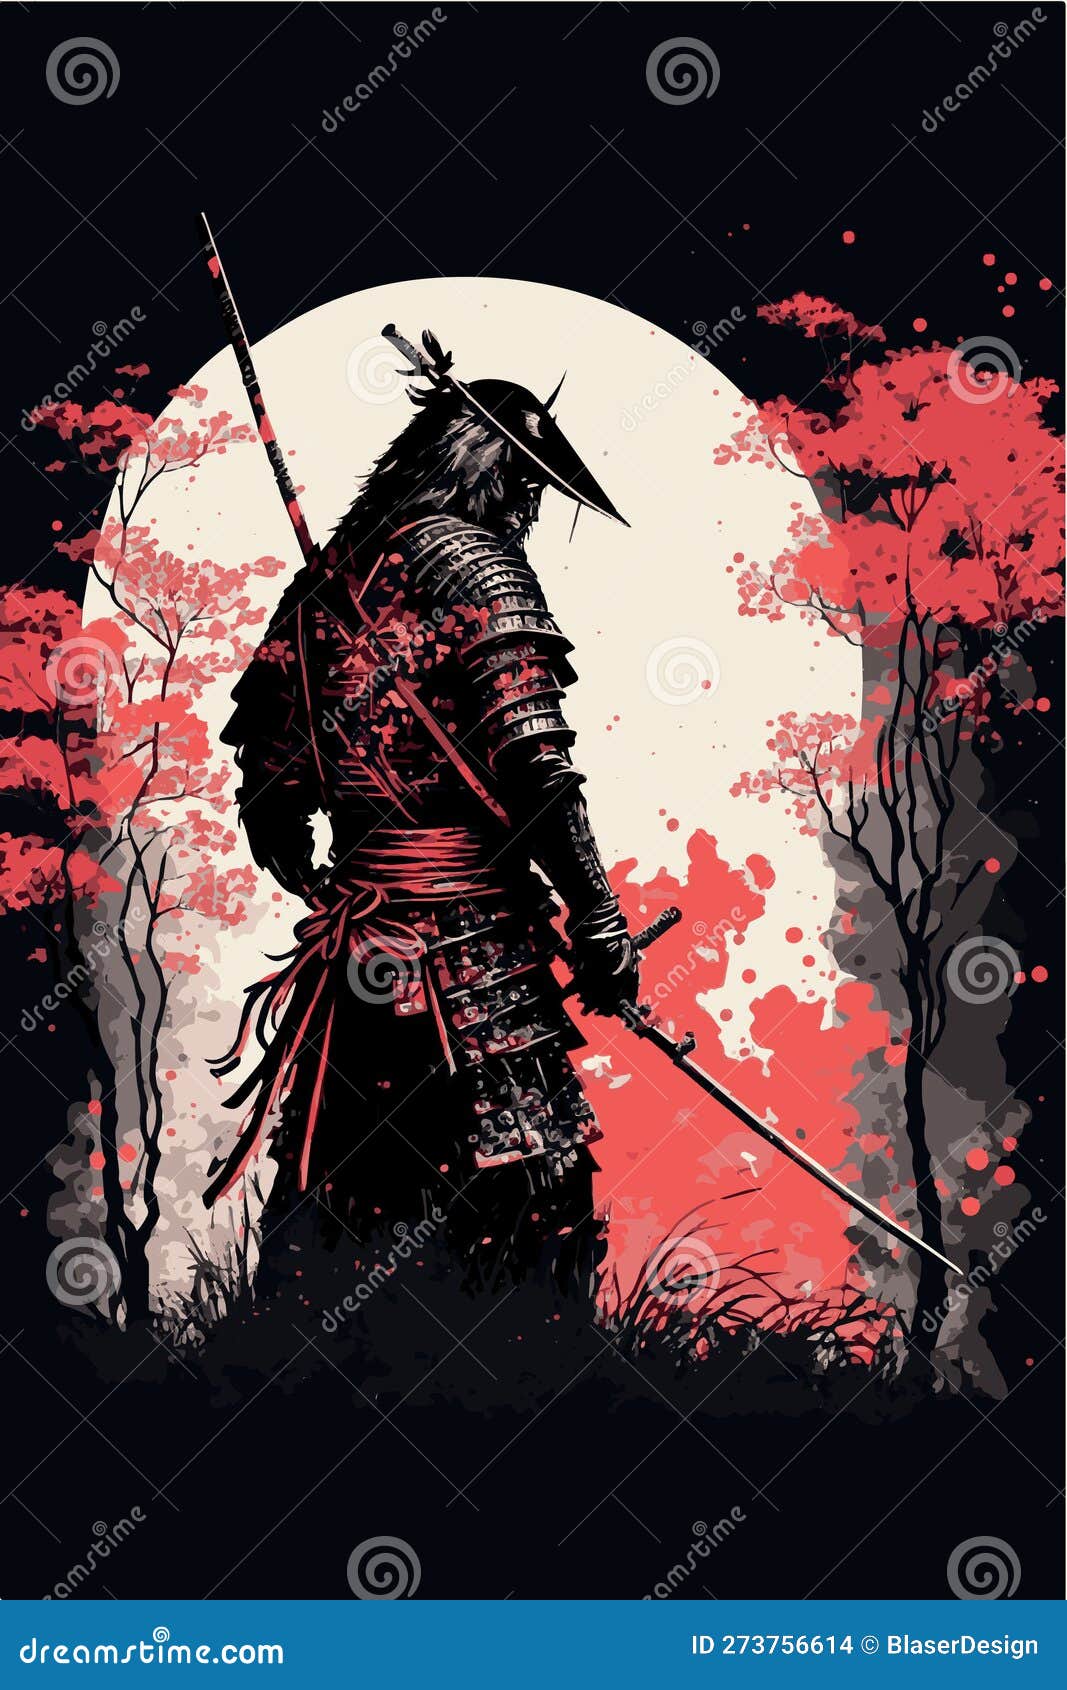 Um cartaz para o jogo samurai.